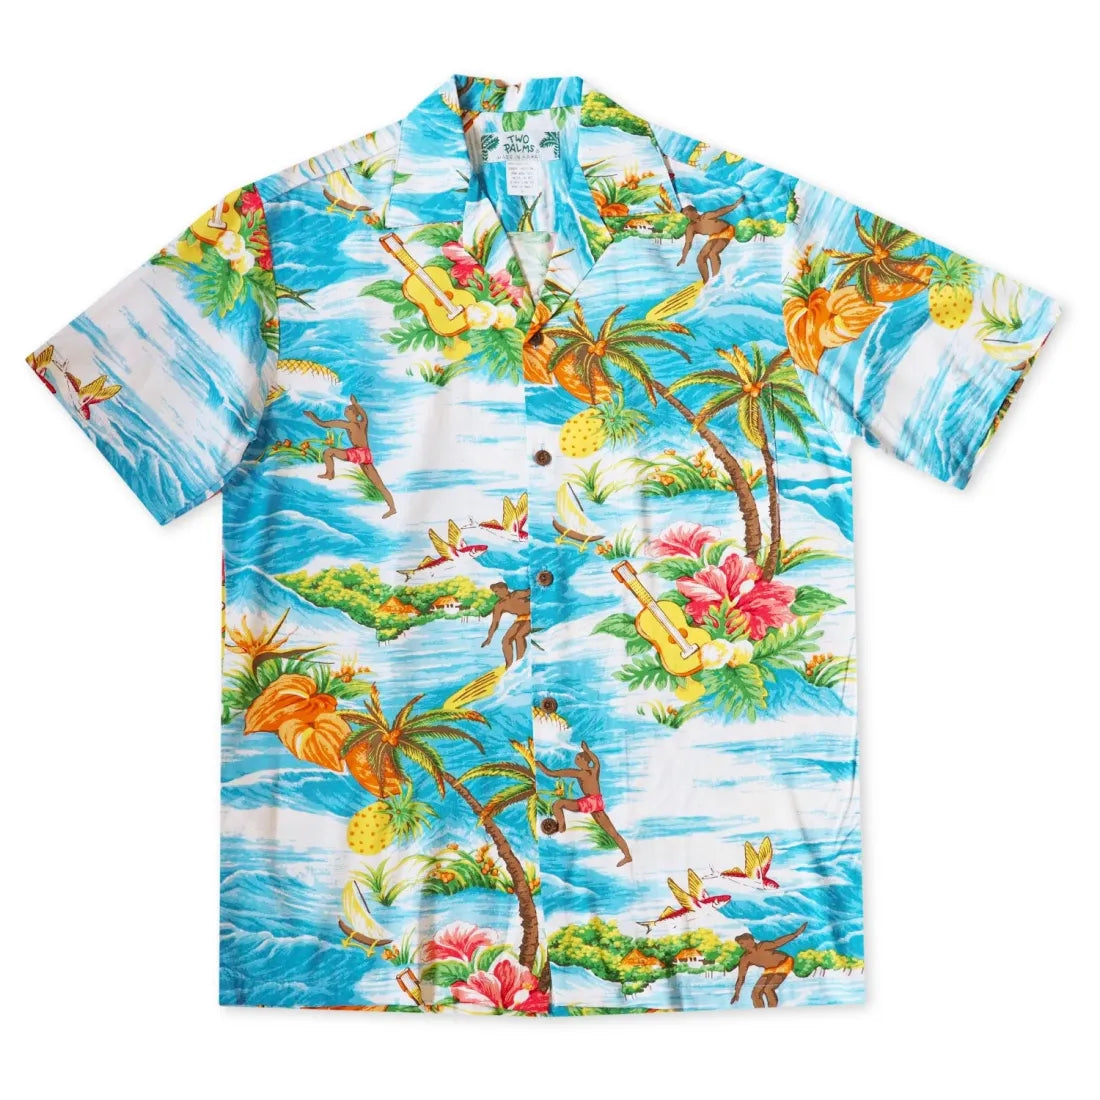 Ocean Life Light Blue Hawaiian Rayon Shirt - Made In Hawaii